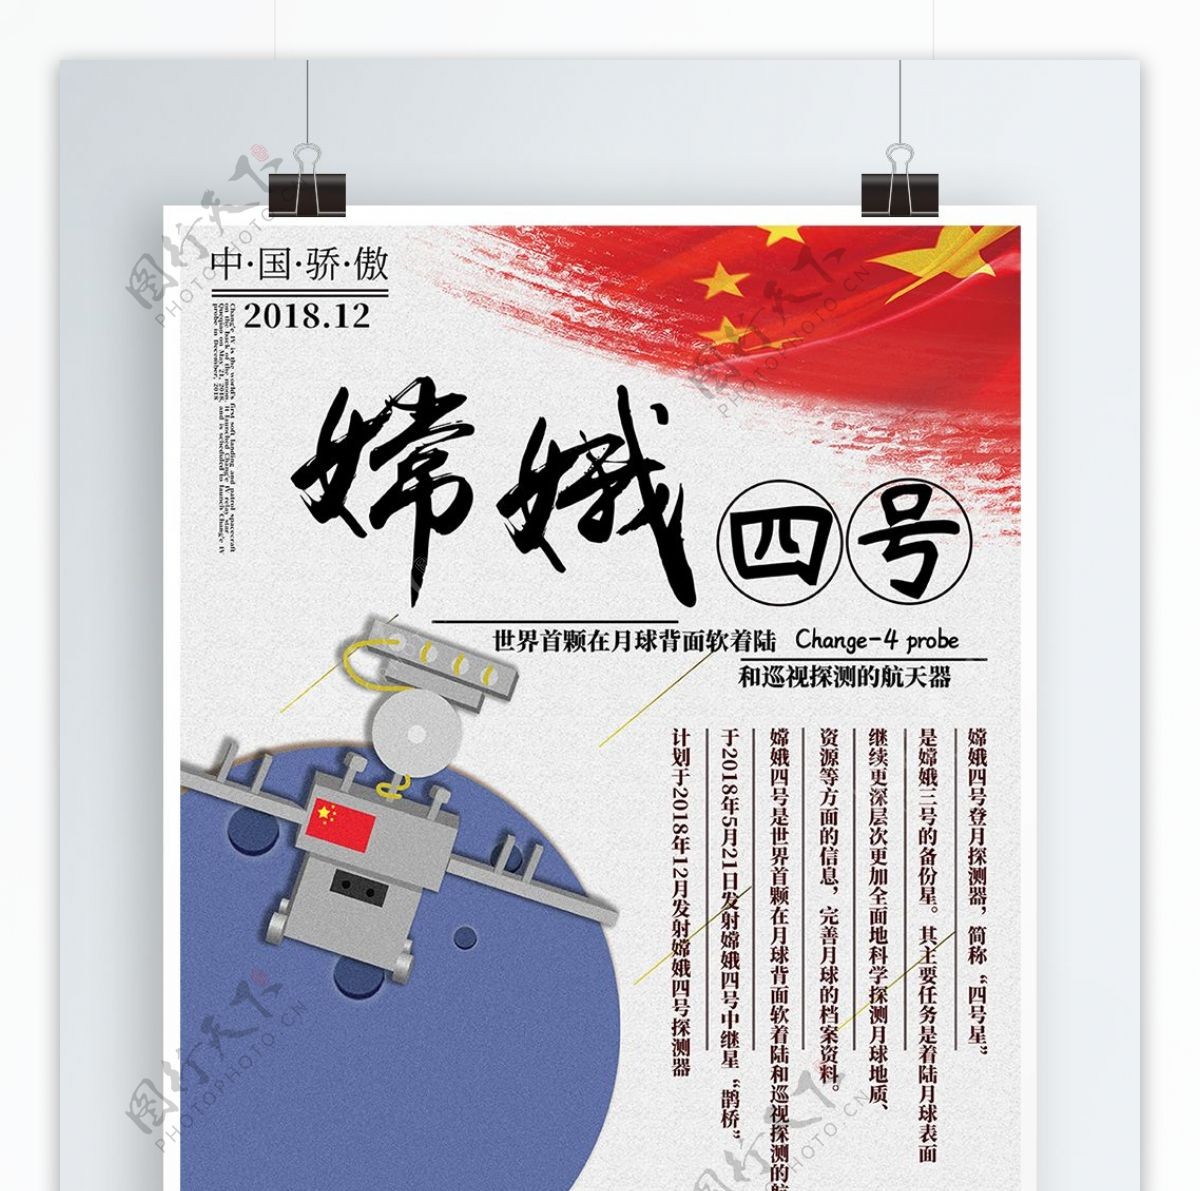 原创插画嫦娥四号发射党建海报